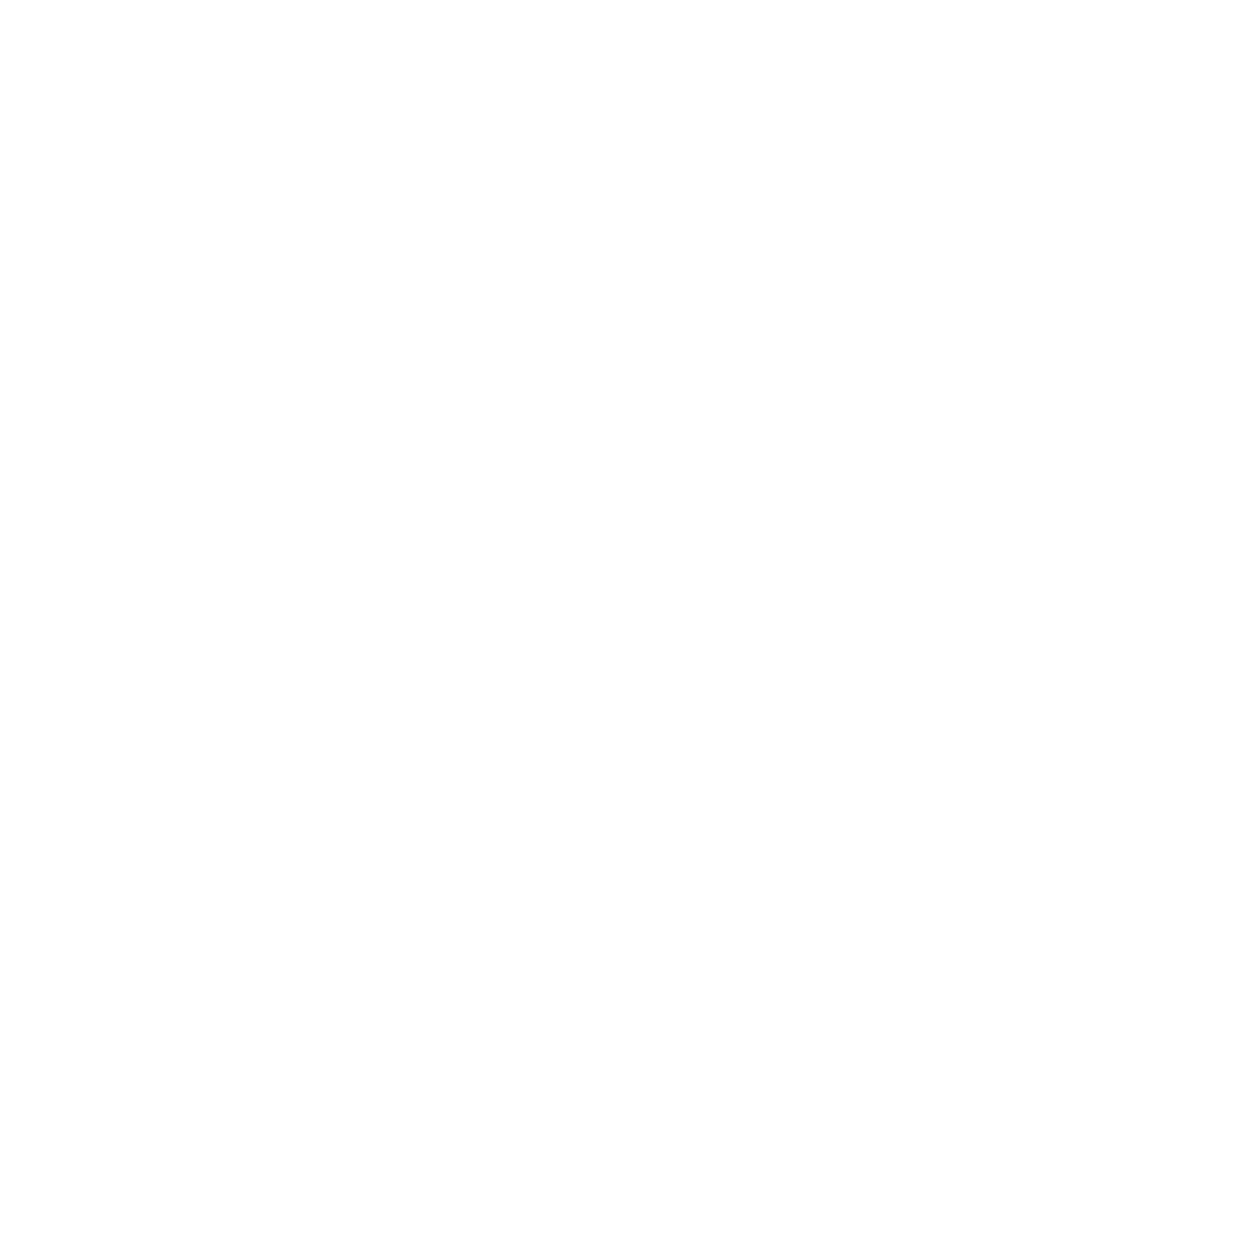 Friends of Matt Rogers